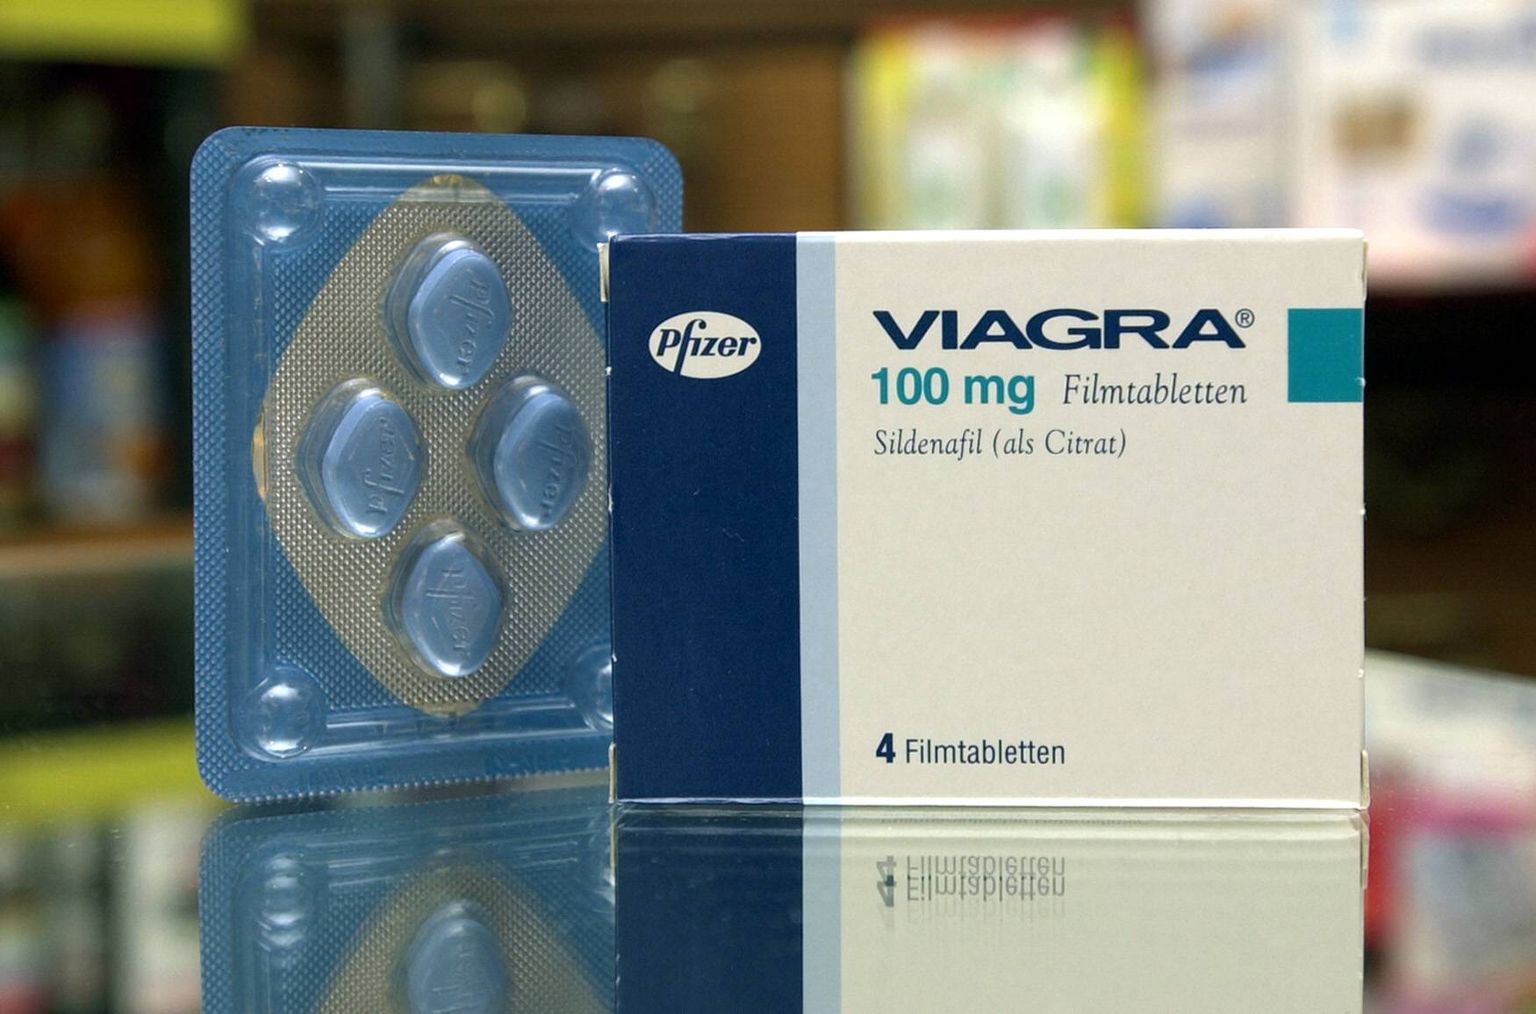 Viagra.